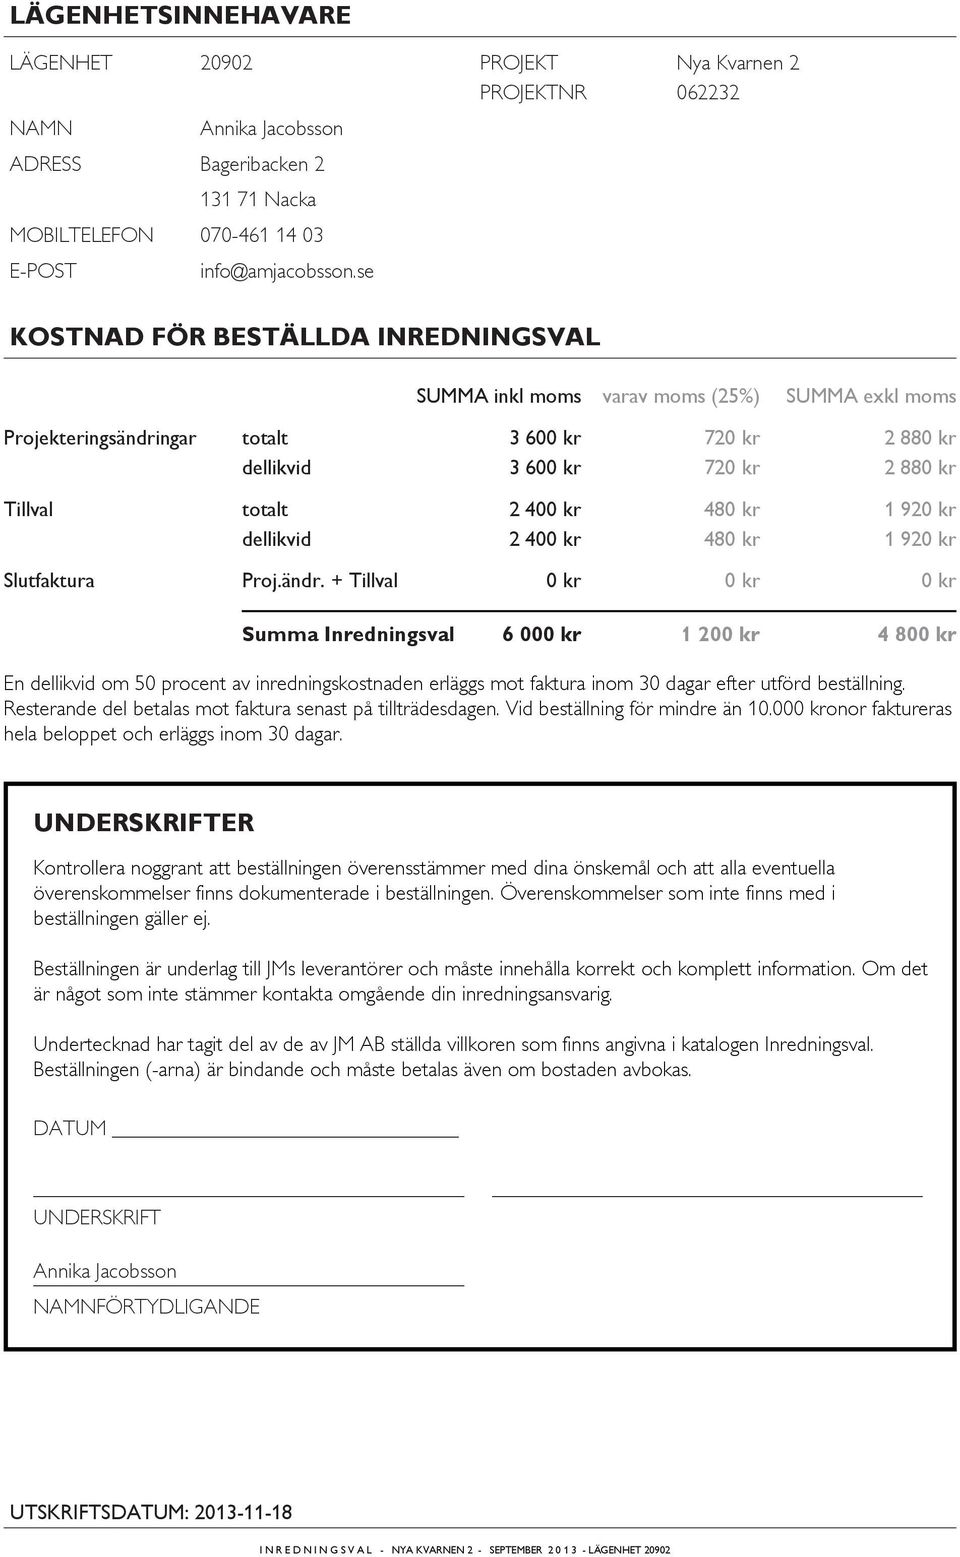 1 92 Slutfaktura Proj.ändr. + Tillval Summa Inredningsval 6 00 1 20 4 80 En dellikvid om 50 procent av inredningskostnaden erläggs mot faktura inom 30 dagar efter utförd beställning.